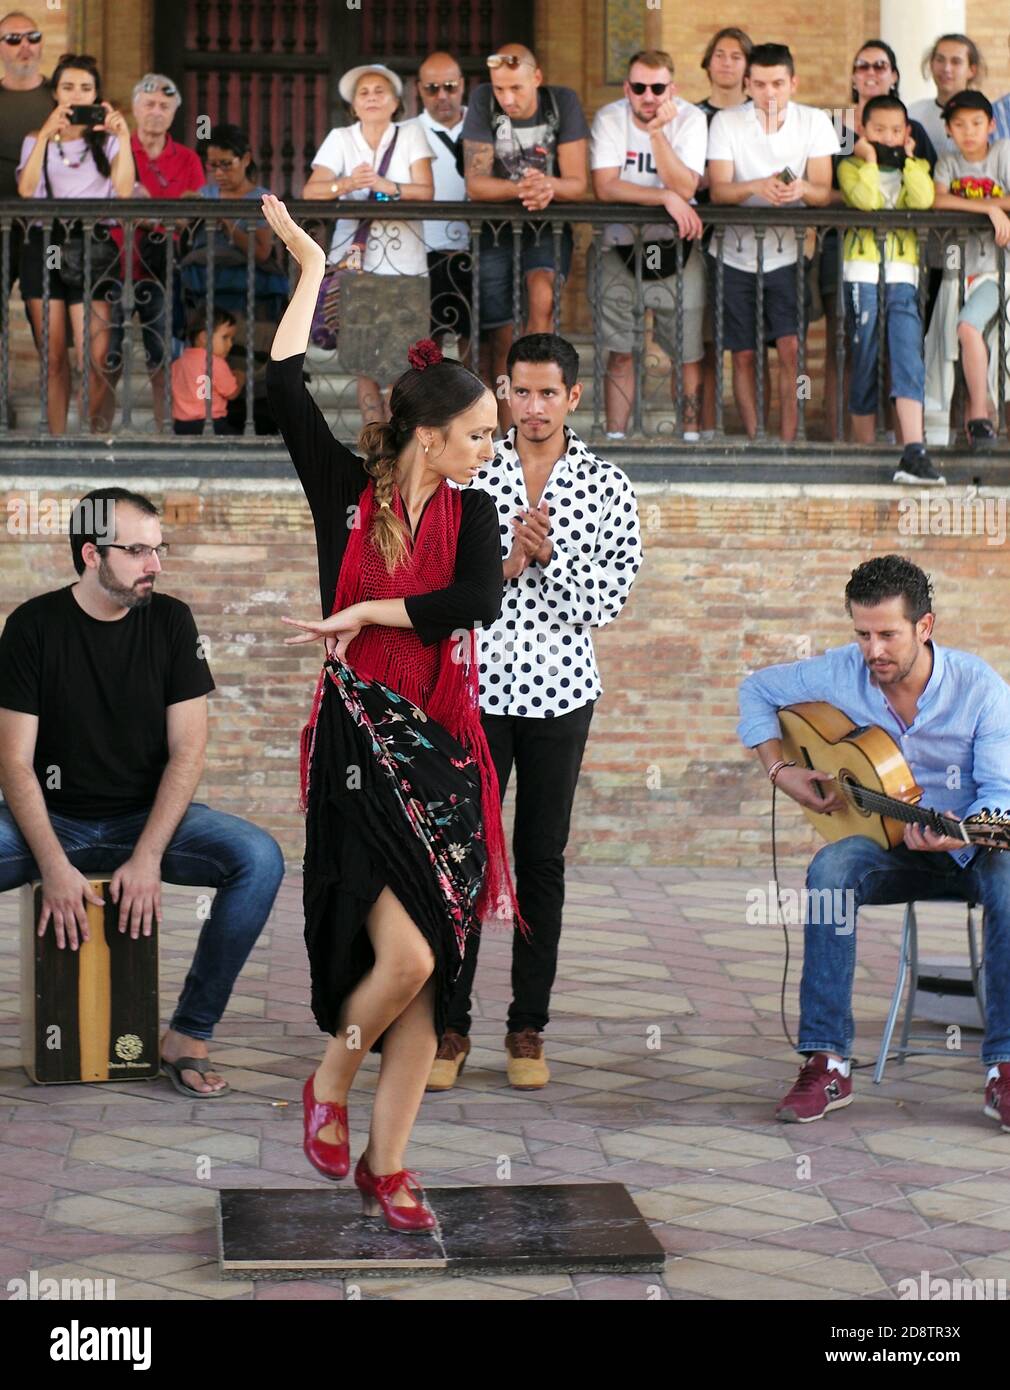 Musiciens et danseurs jouent du flamenco pour les membres du public sur la Plaza de España, Séville, Espagne le 23 août 2019. Photographie John Voos Banque D'Images